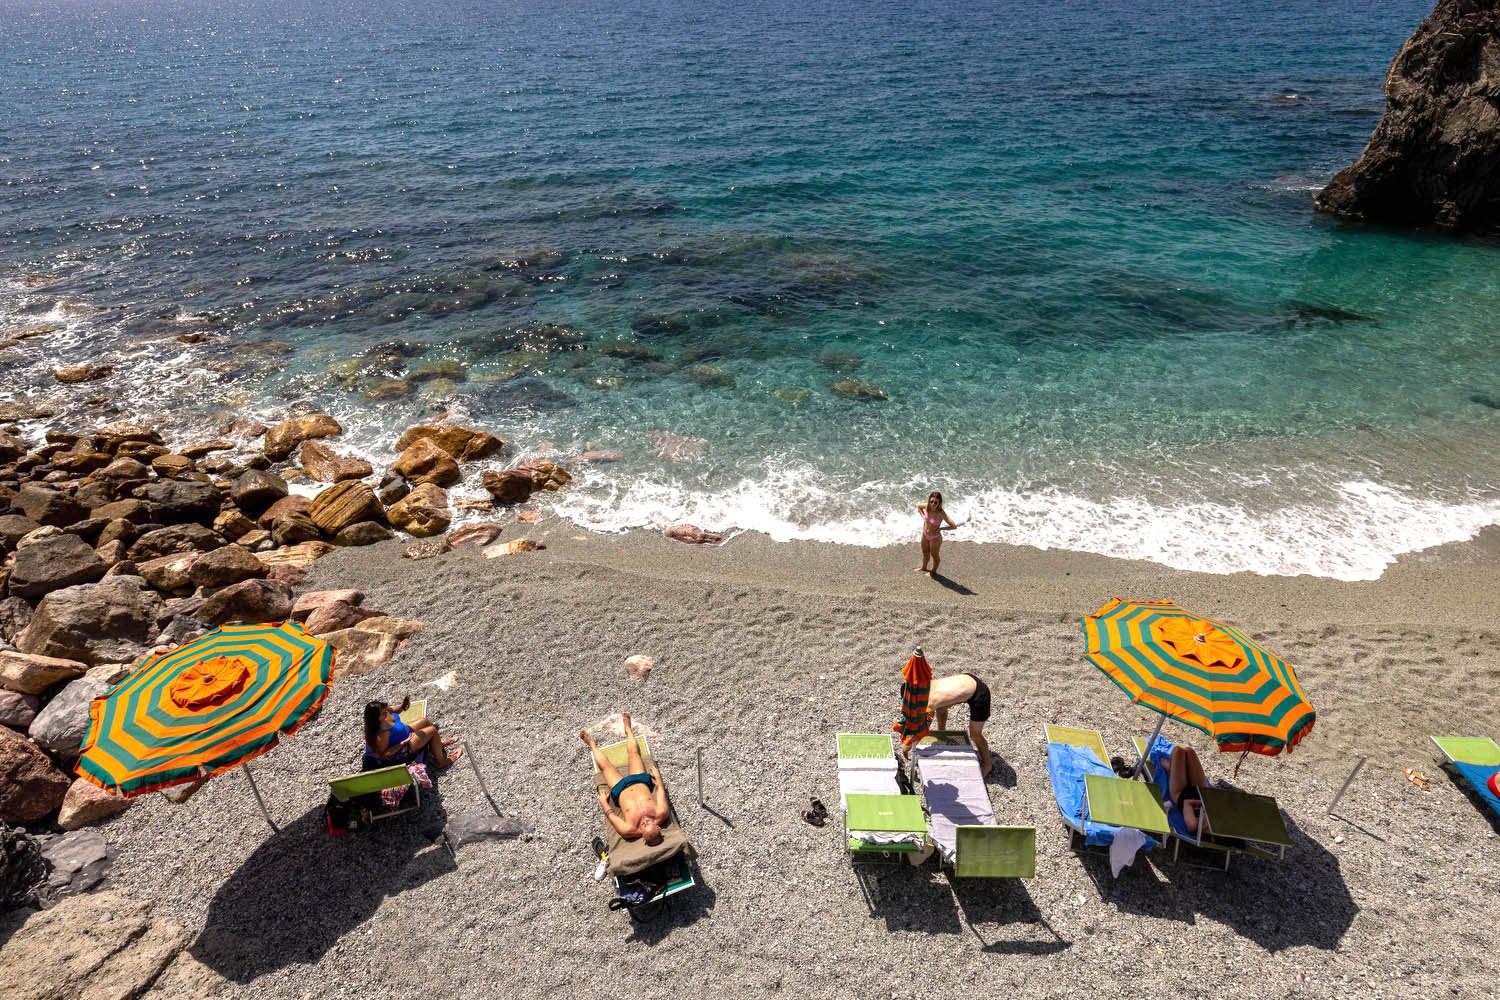 Sunbathers at the Monterosso al Mare beach